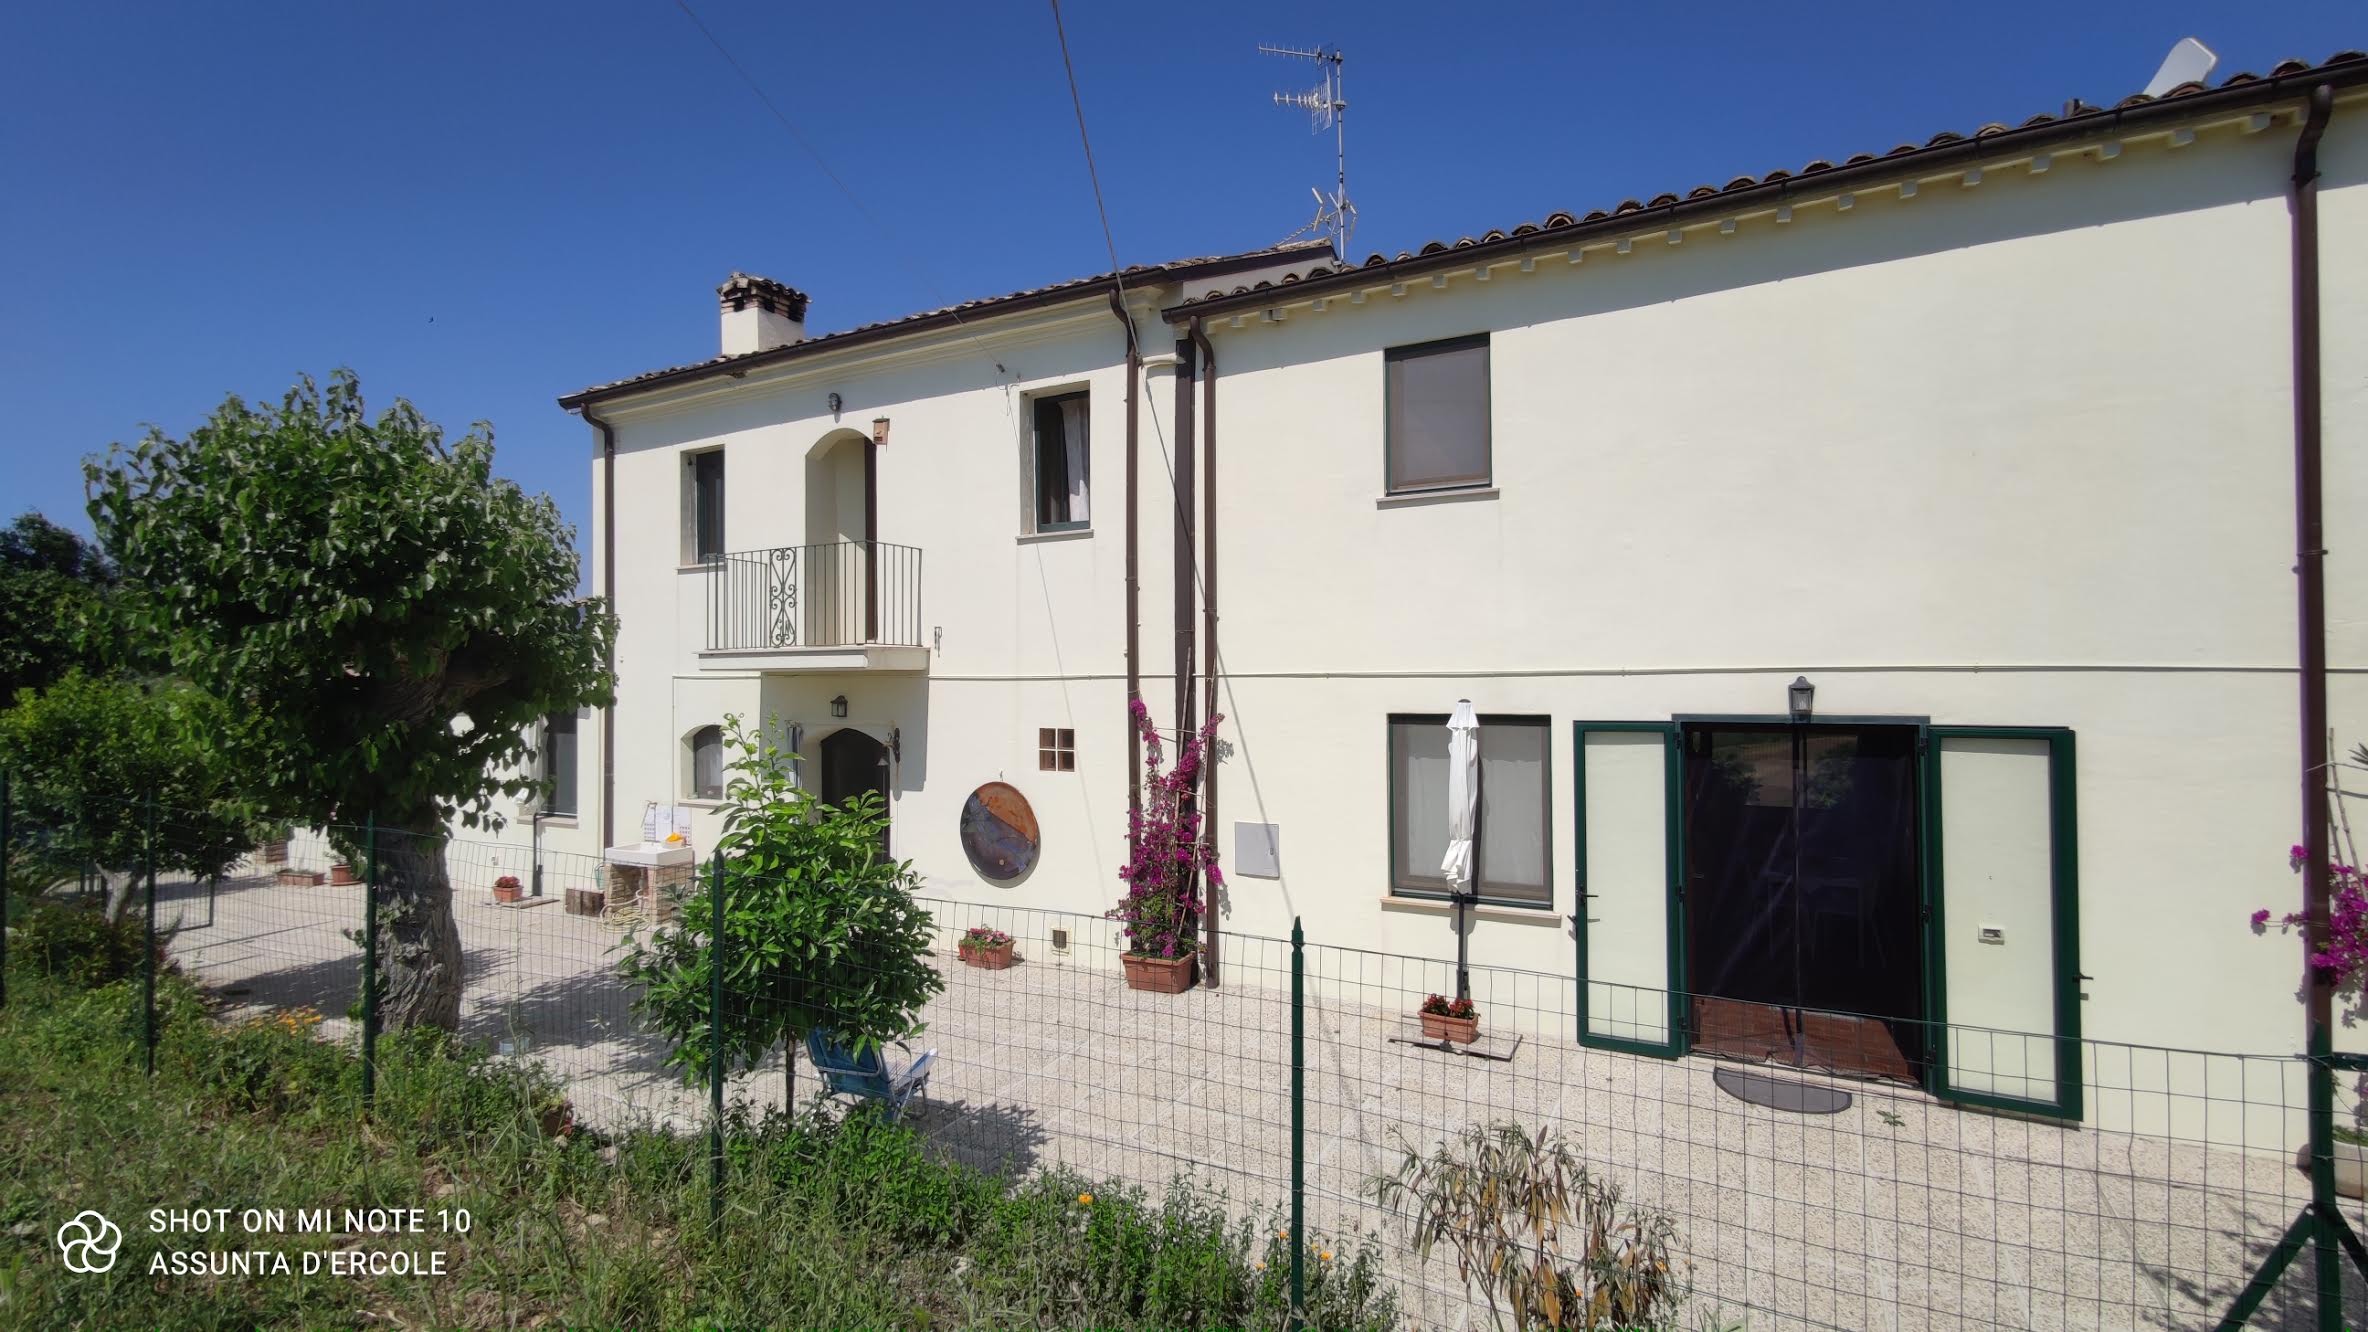 Ref 1352 Casalbordino (CH) – Country villa in a magnificent bucolic setting € 320000